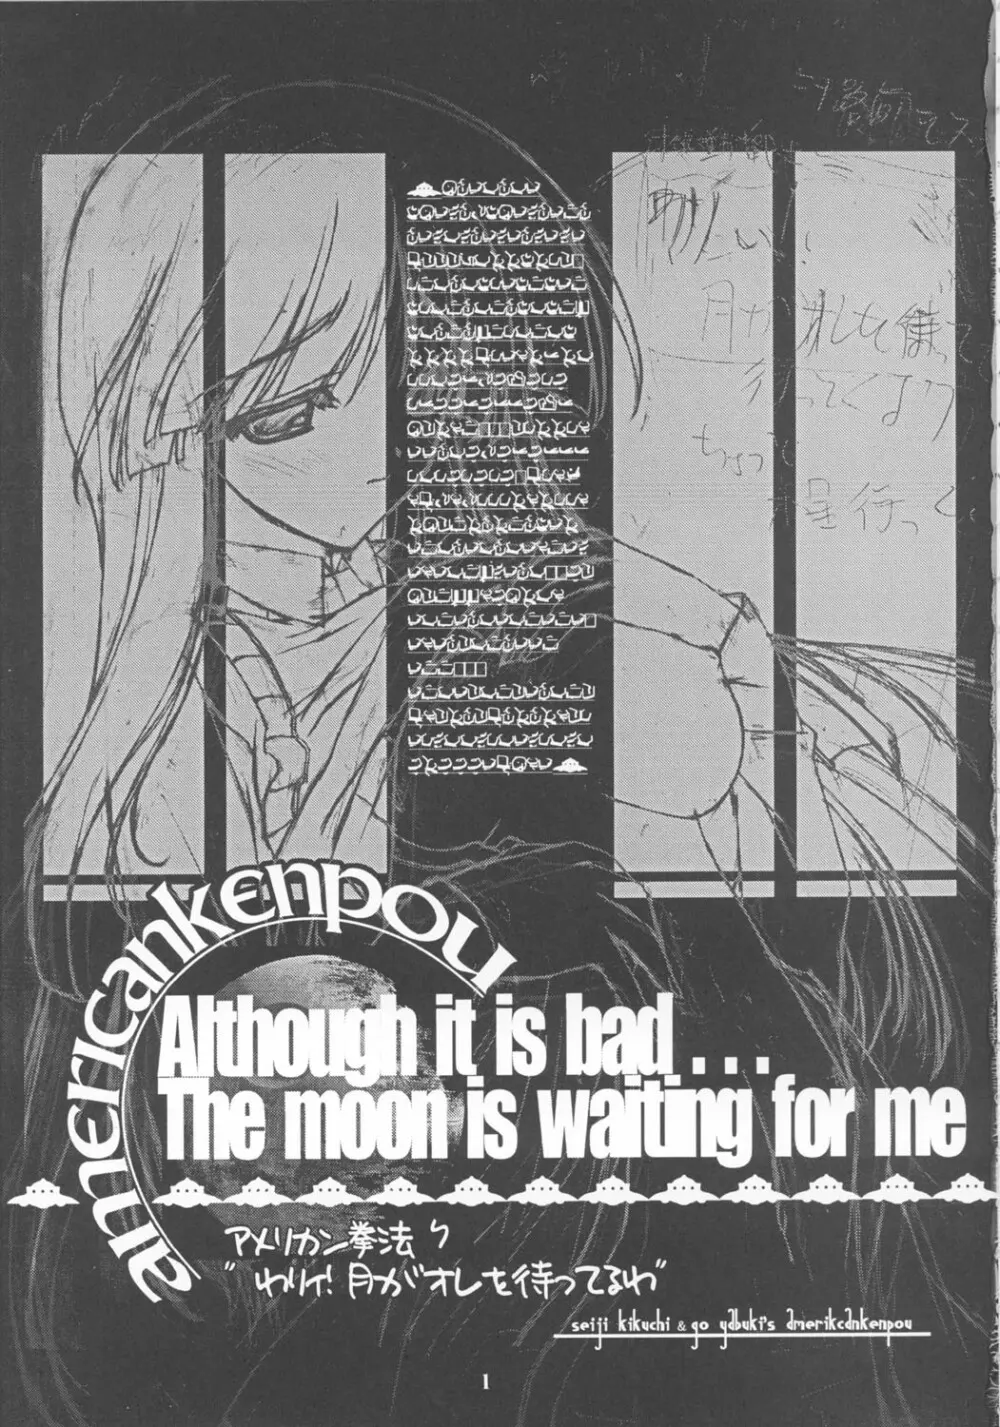 わりぃ！月が俺を待ってるわ ～Although it is bad...The moon is waiting for me～ - page2